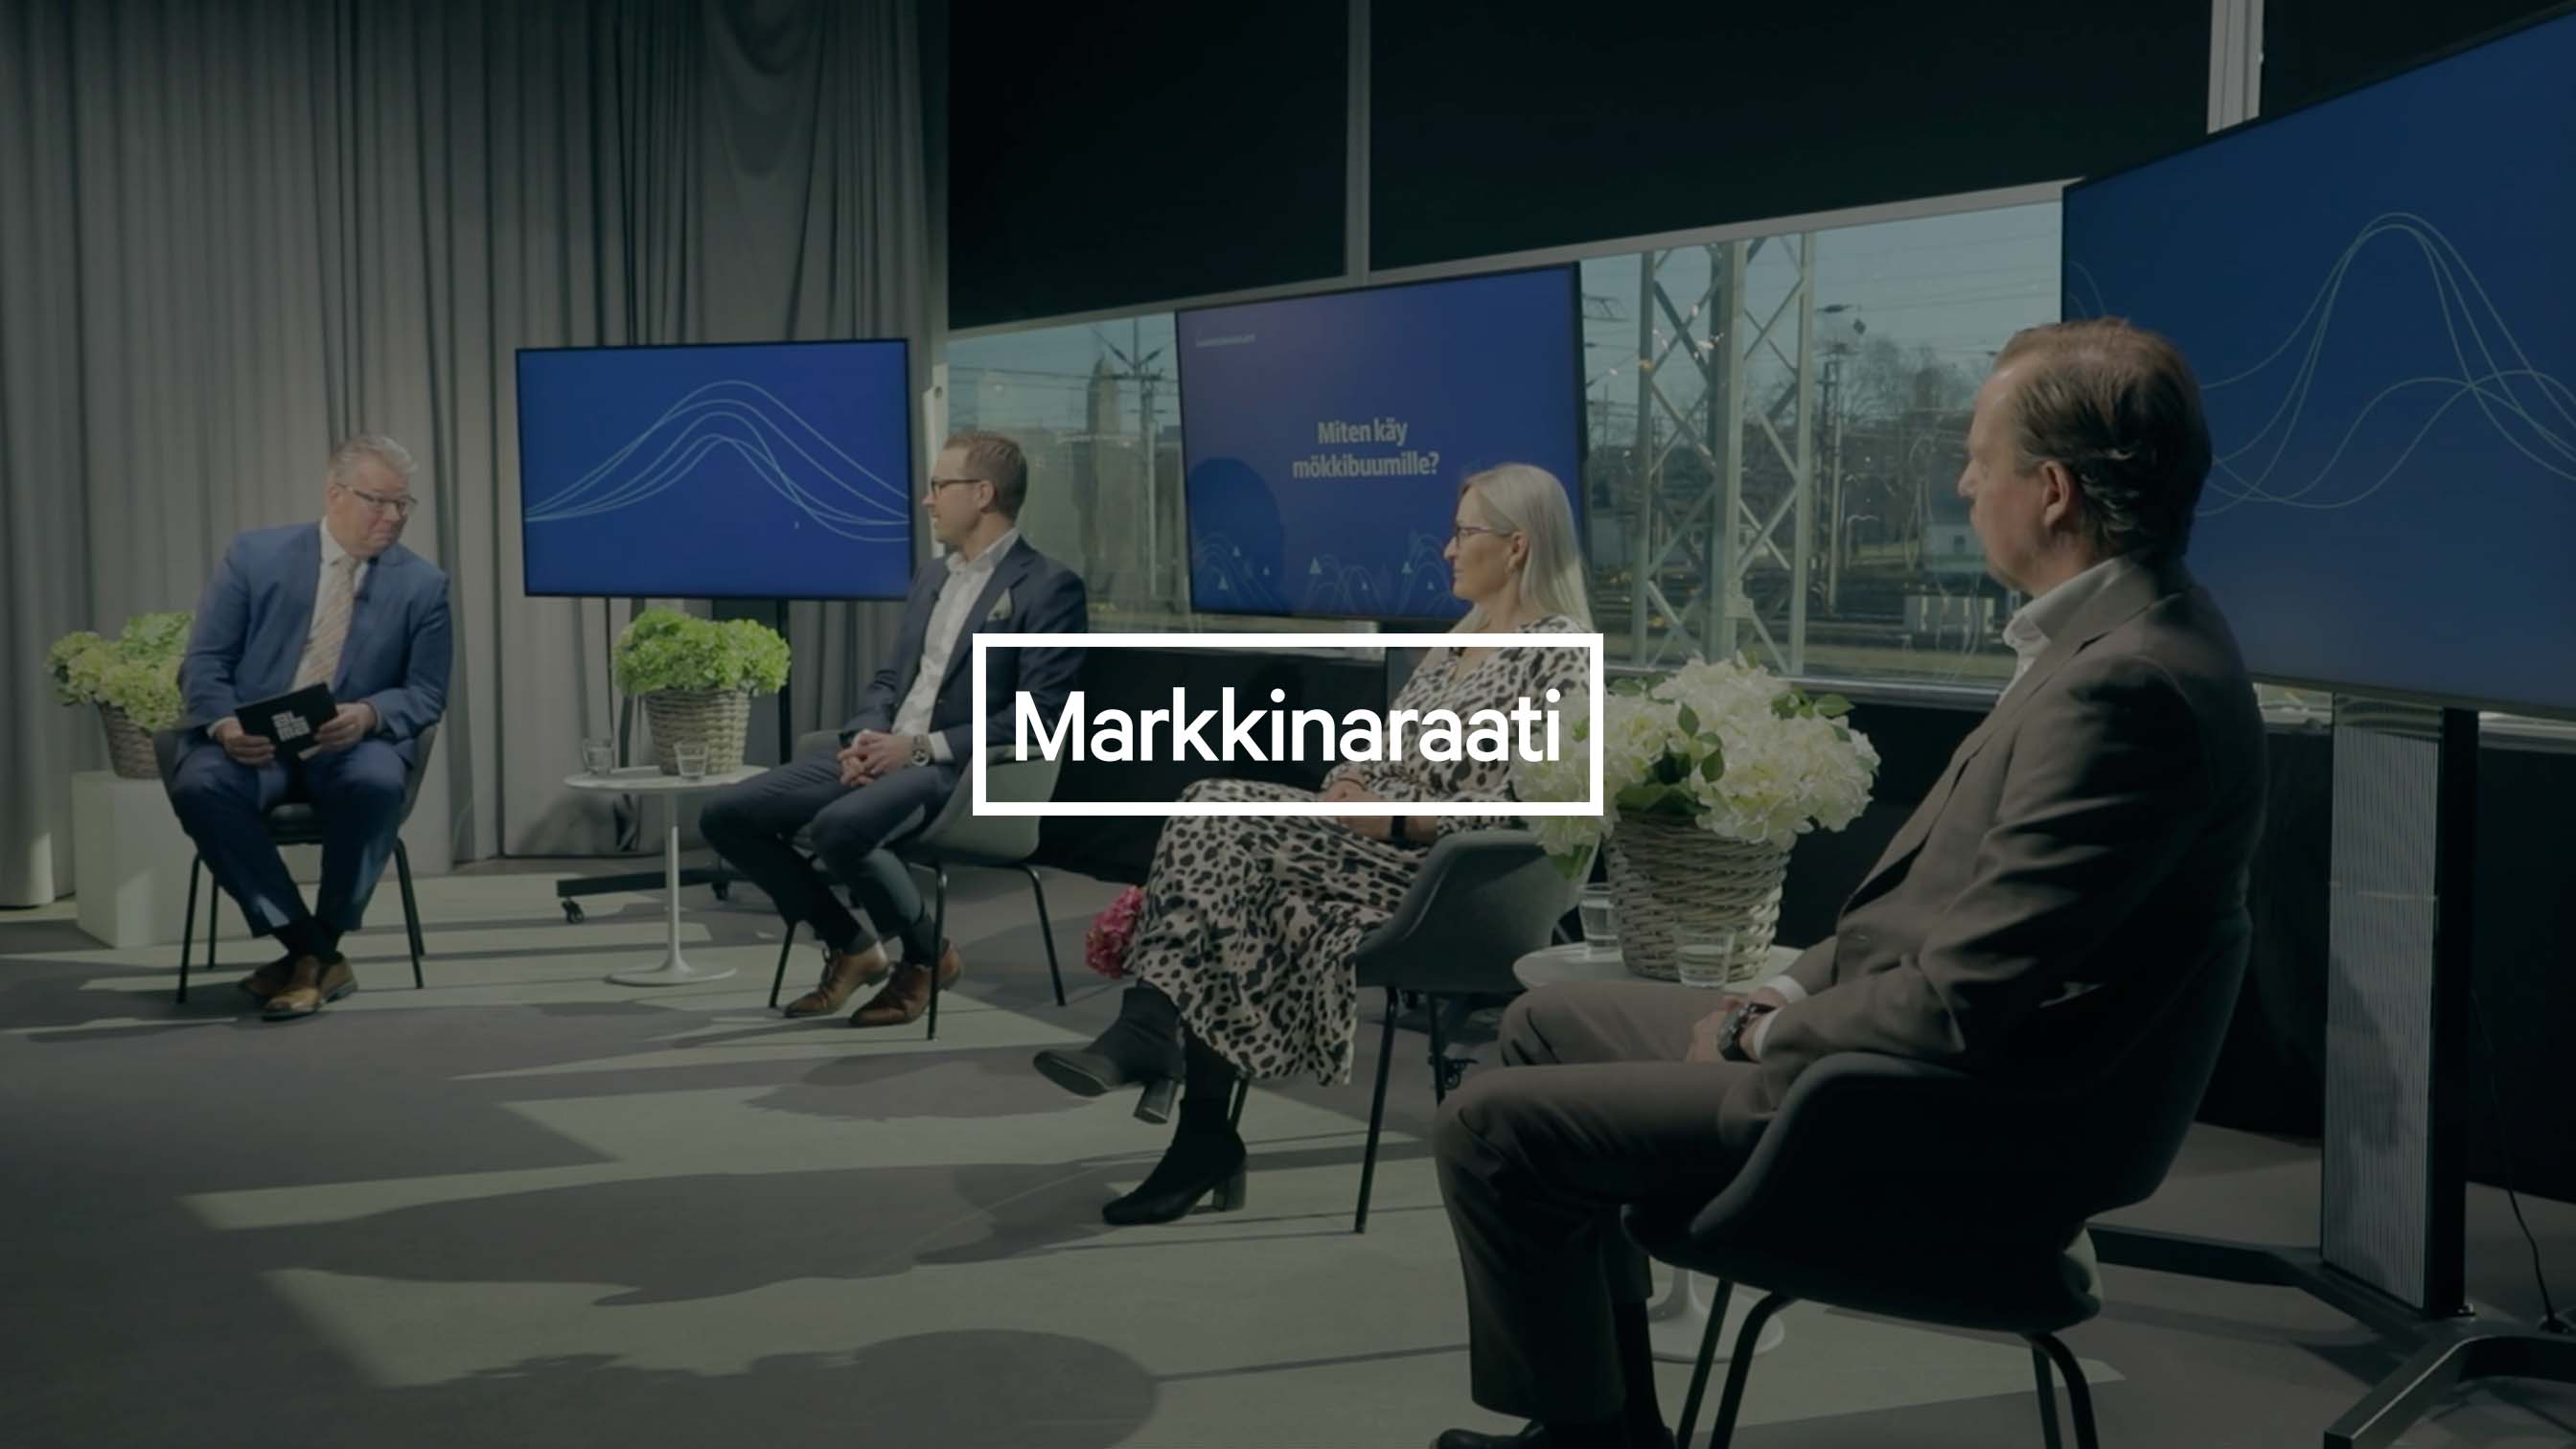 Markkinaraati: Sommarstugeivern i Finland fortsätter